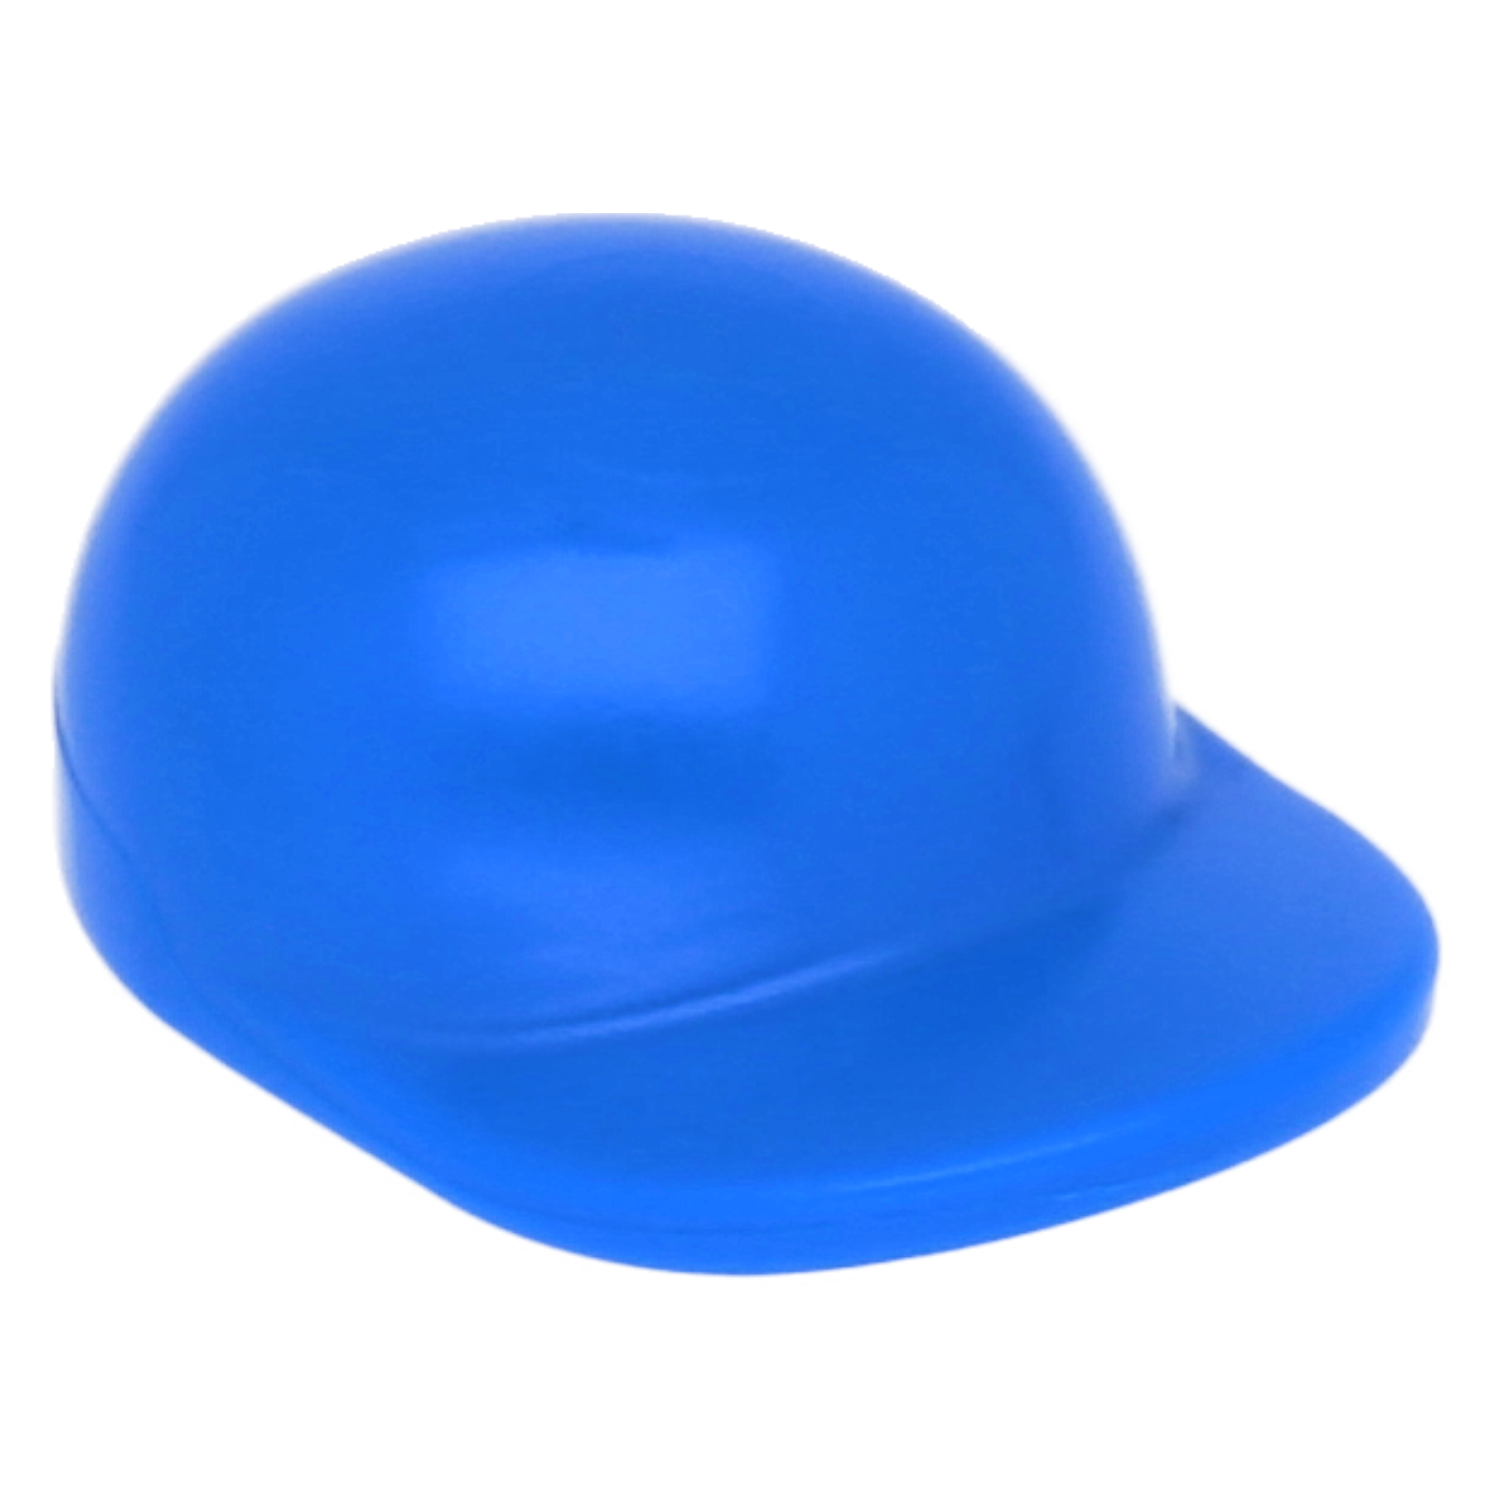 LEGO Minifigures Hats - Cap with a short, curved umbrella